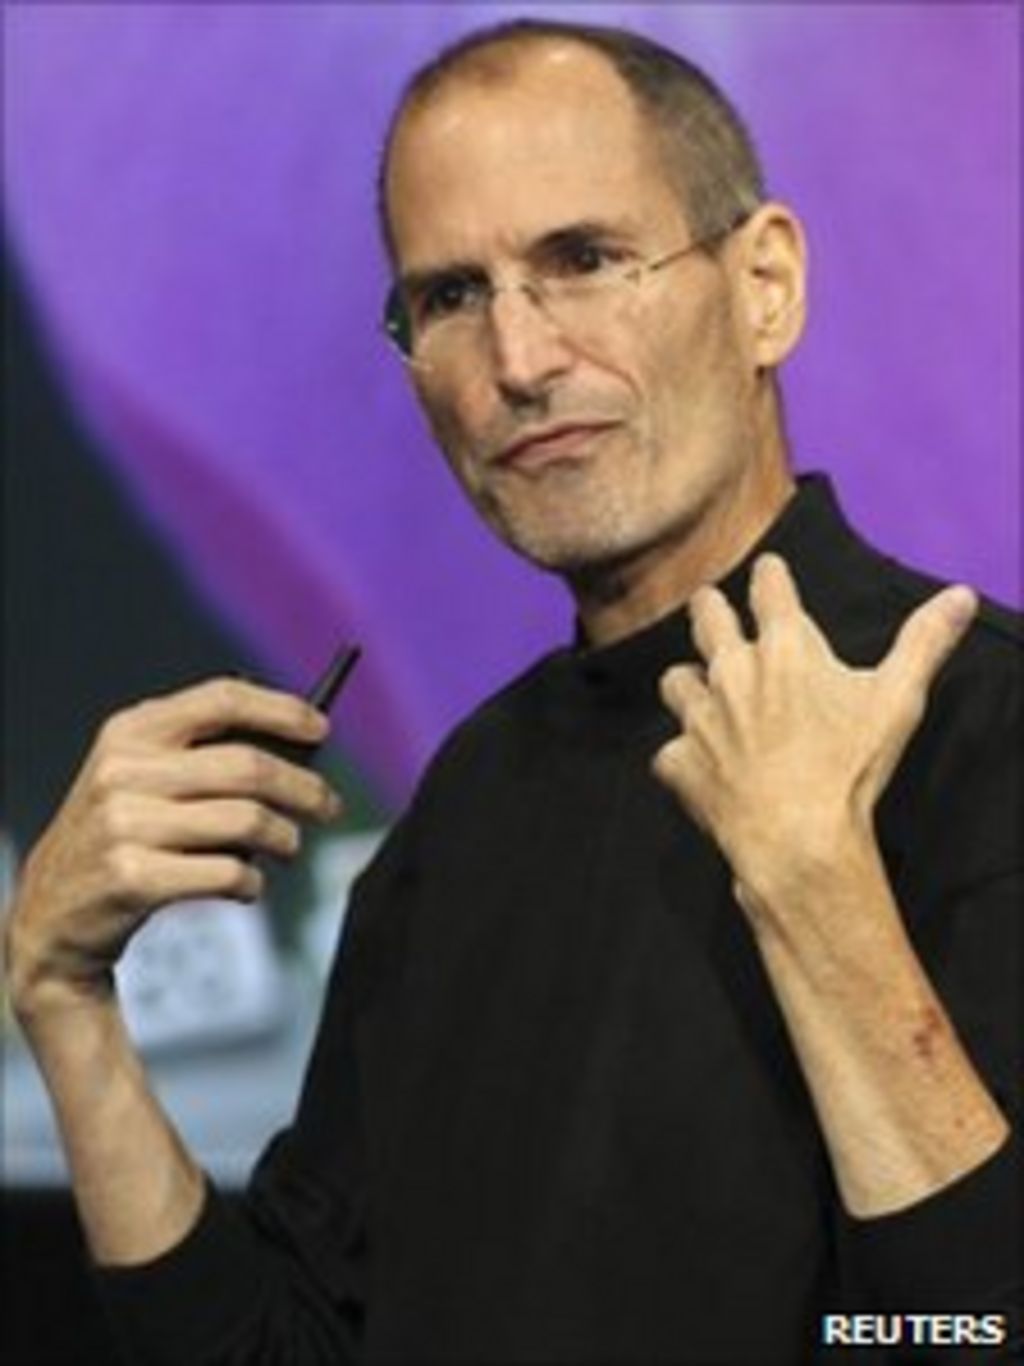 Apple shares drop on Steve Jobs' health - BBC News